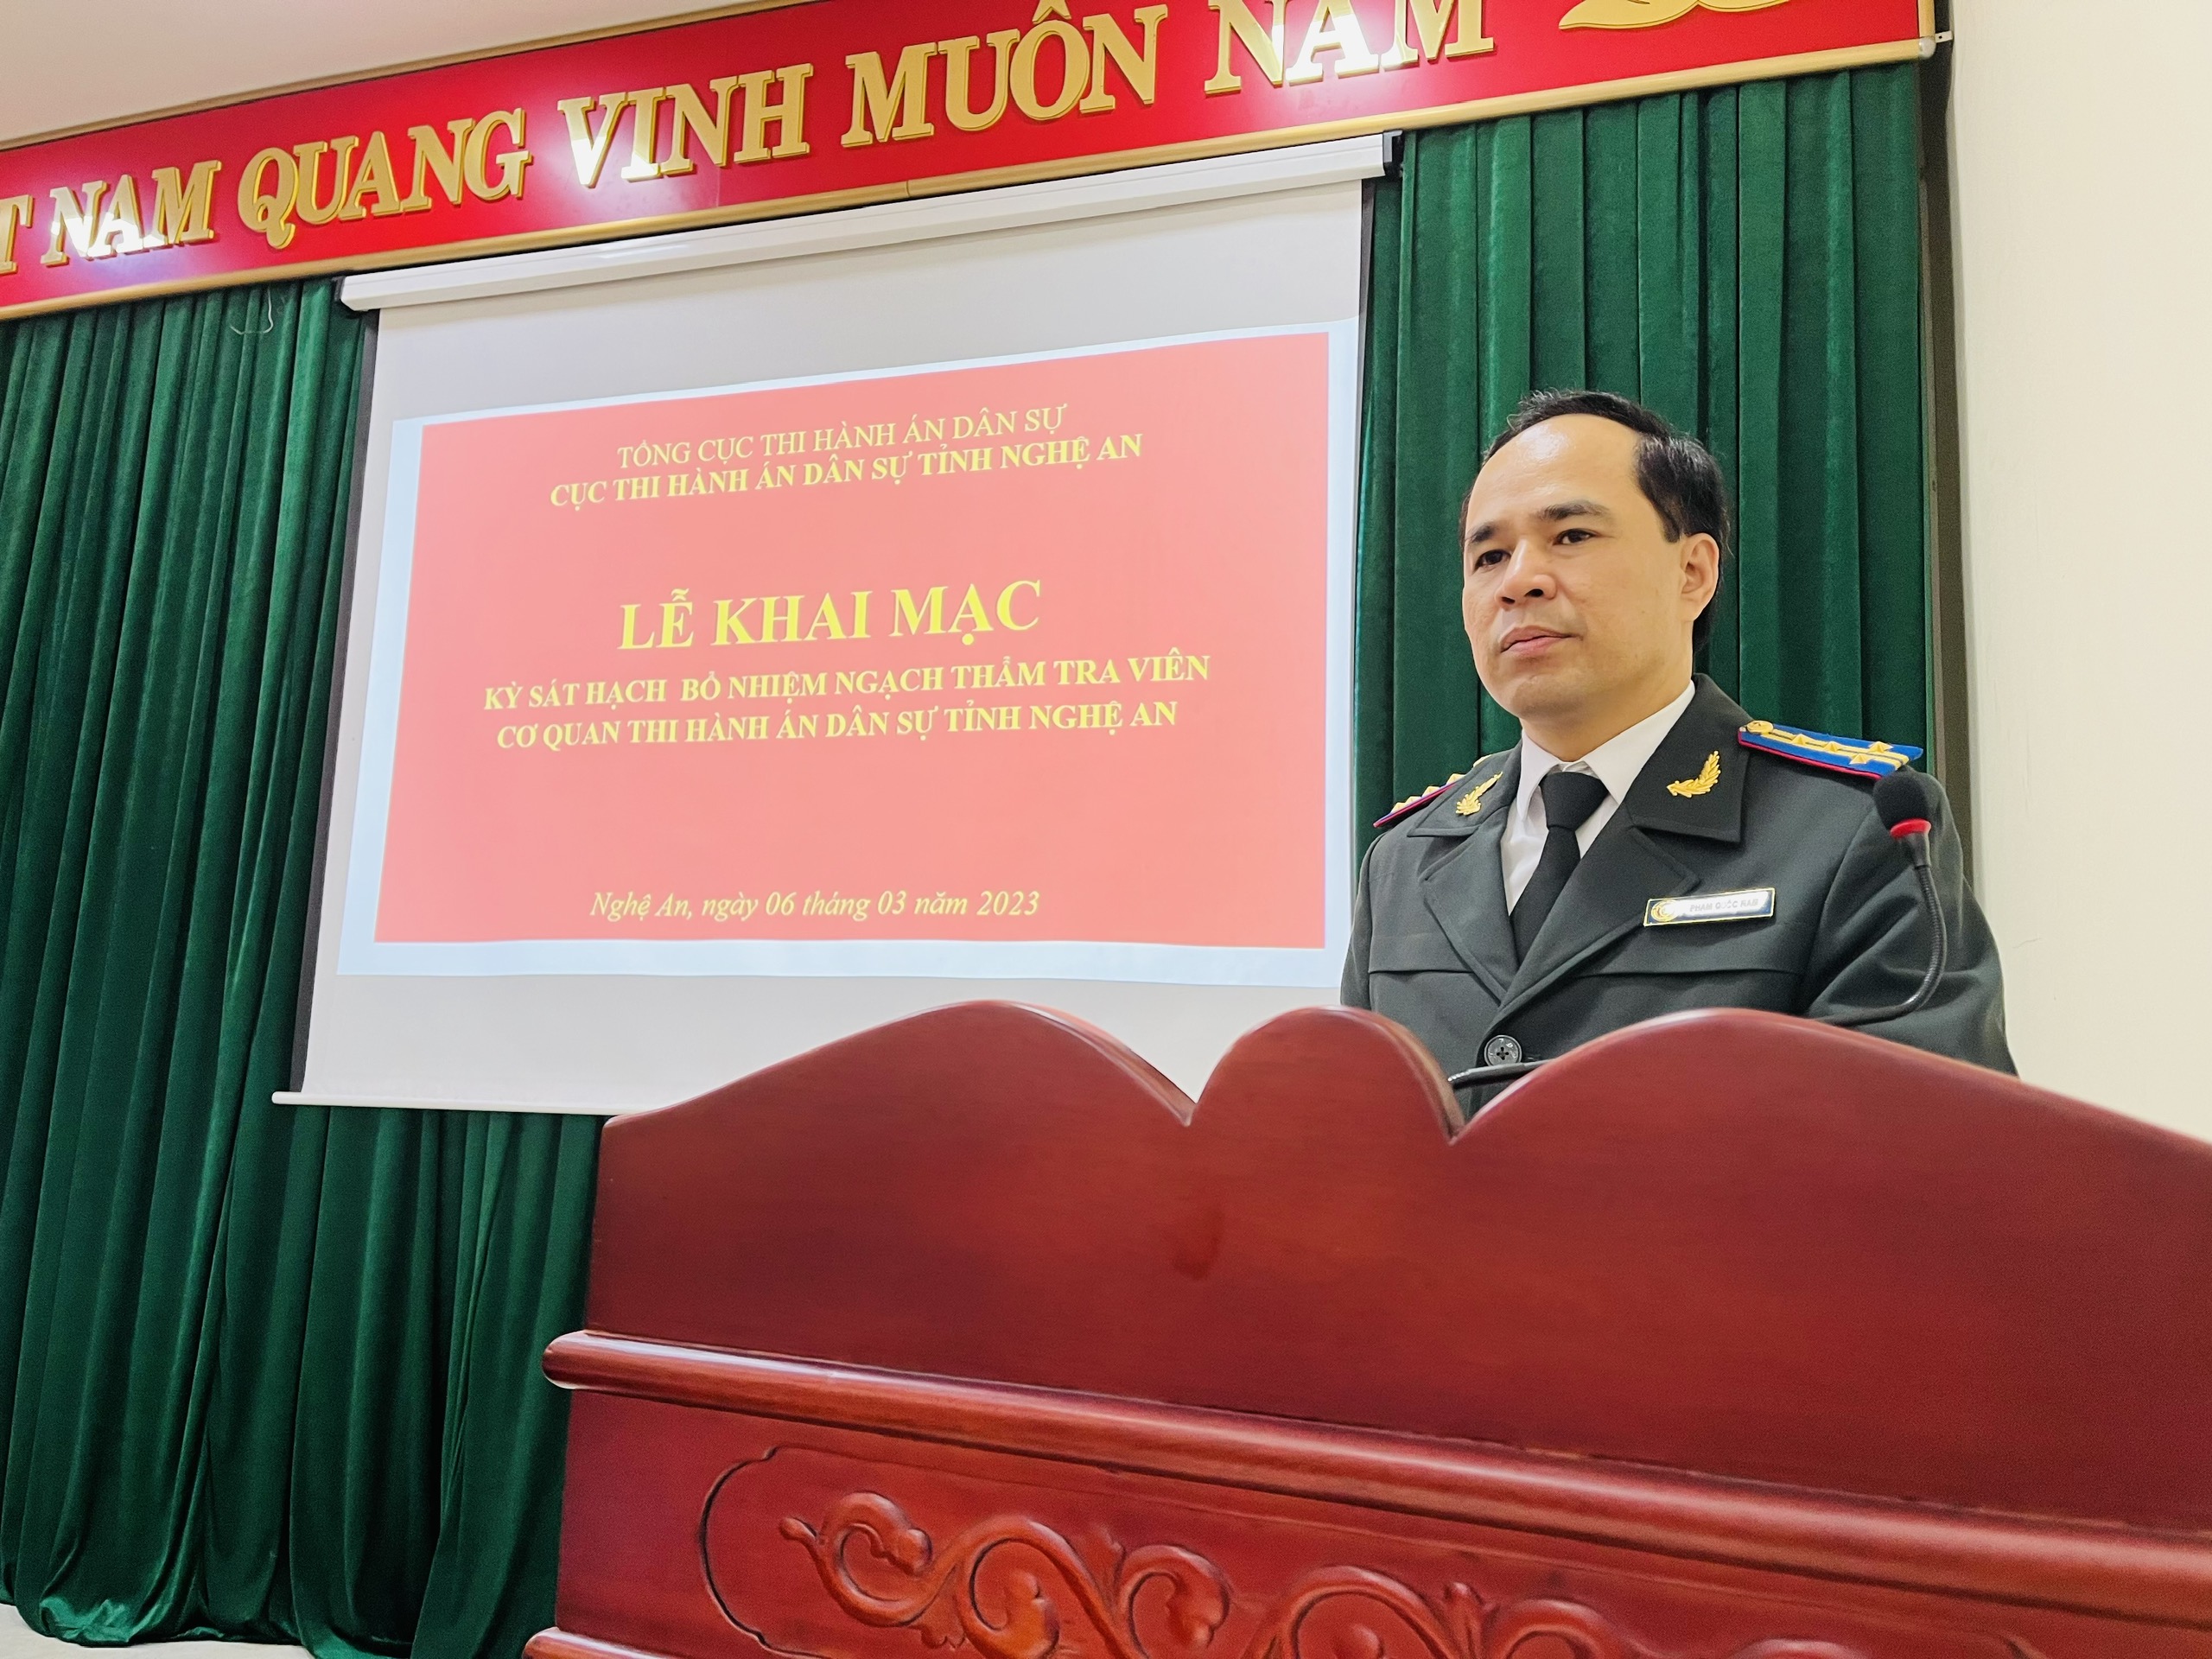 Cục Thi hành án dân sự tỉnh Nghệ An: Tổ chức kỳ thi kiểm tra, sát hạch bổ nhiệm ngạch Thẩm tra viên năm 2023